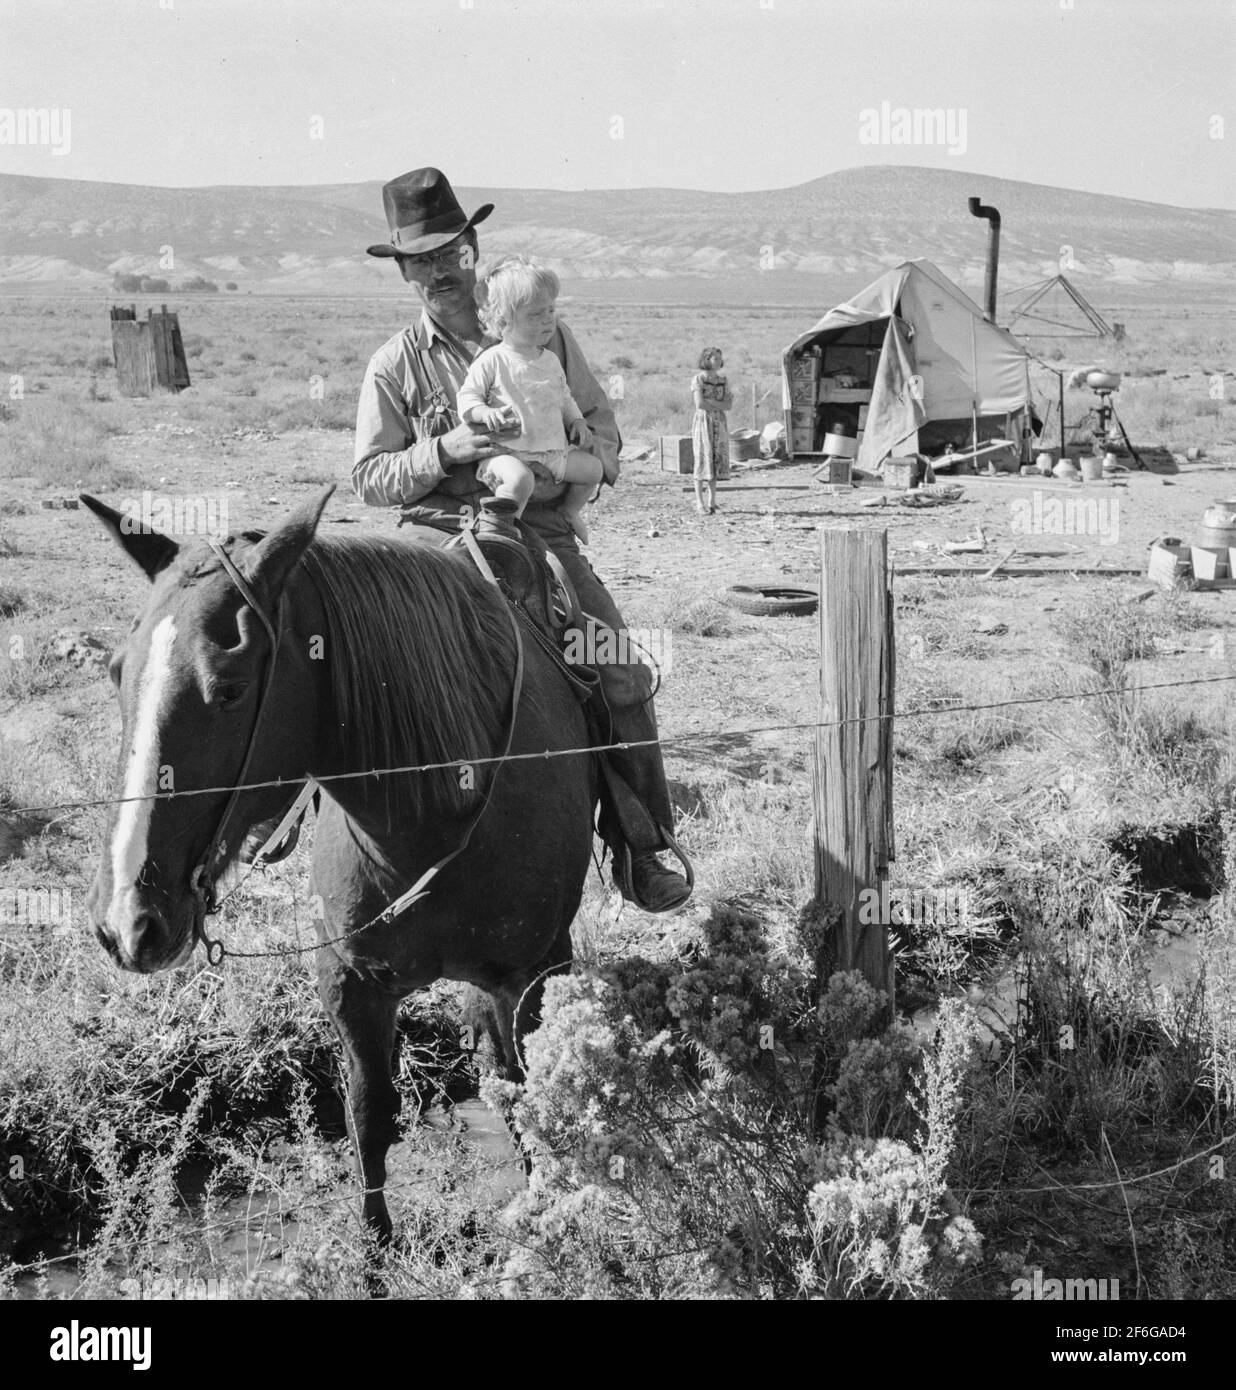 M. Fairbanks et son enfant à cheval avec sa femme et leur tente en arrière-plan. La famille Fairbanks a déménagé dans trois endroits différents du projet en un an. Région de Willow Creek, comté de Malheur, Oregon. 1939. Photo de Dorothea Lange. Banque D'Images